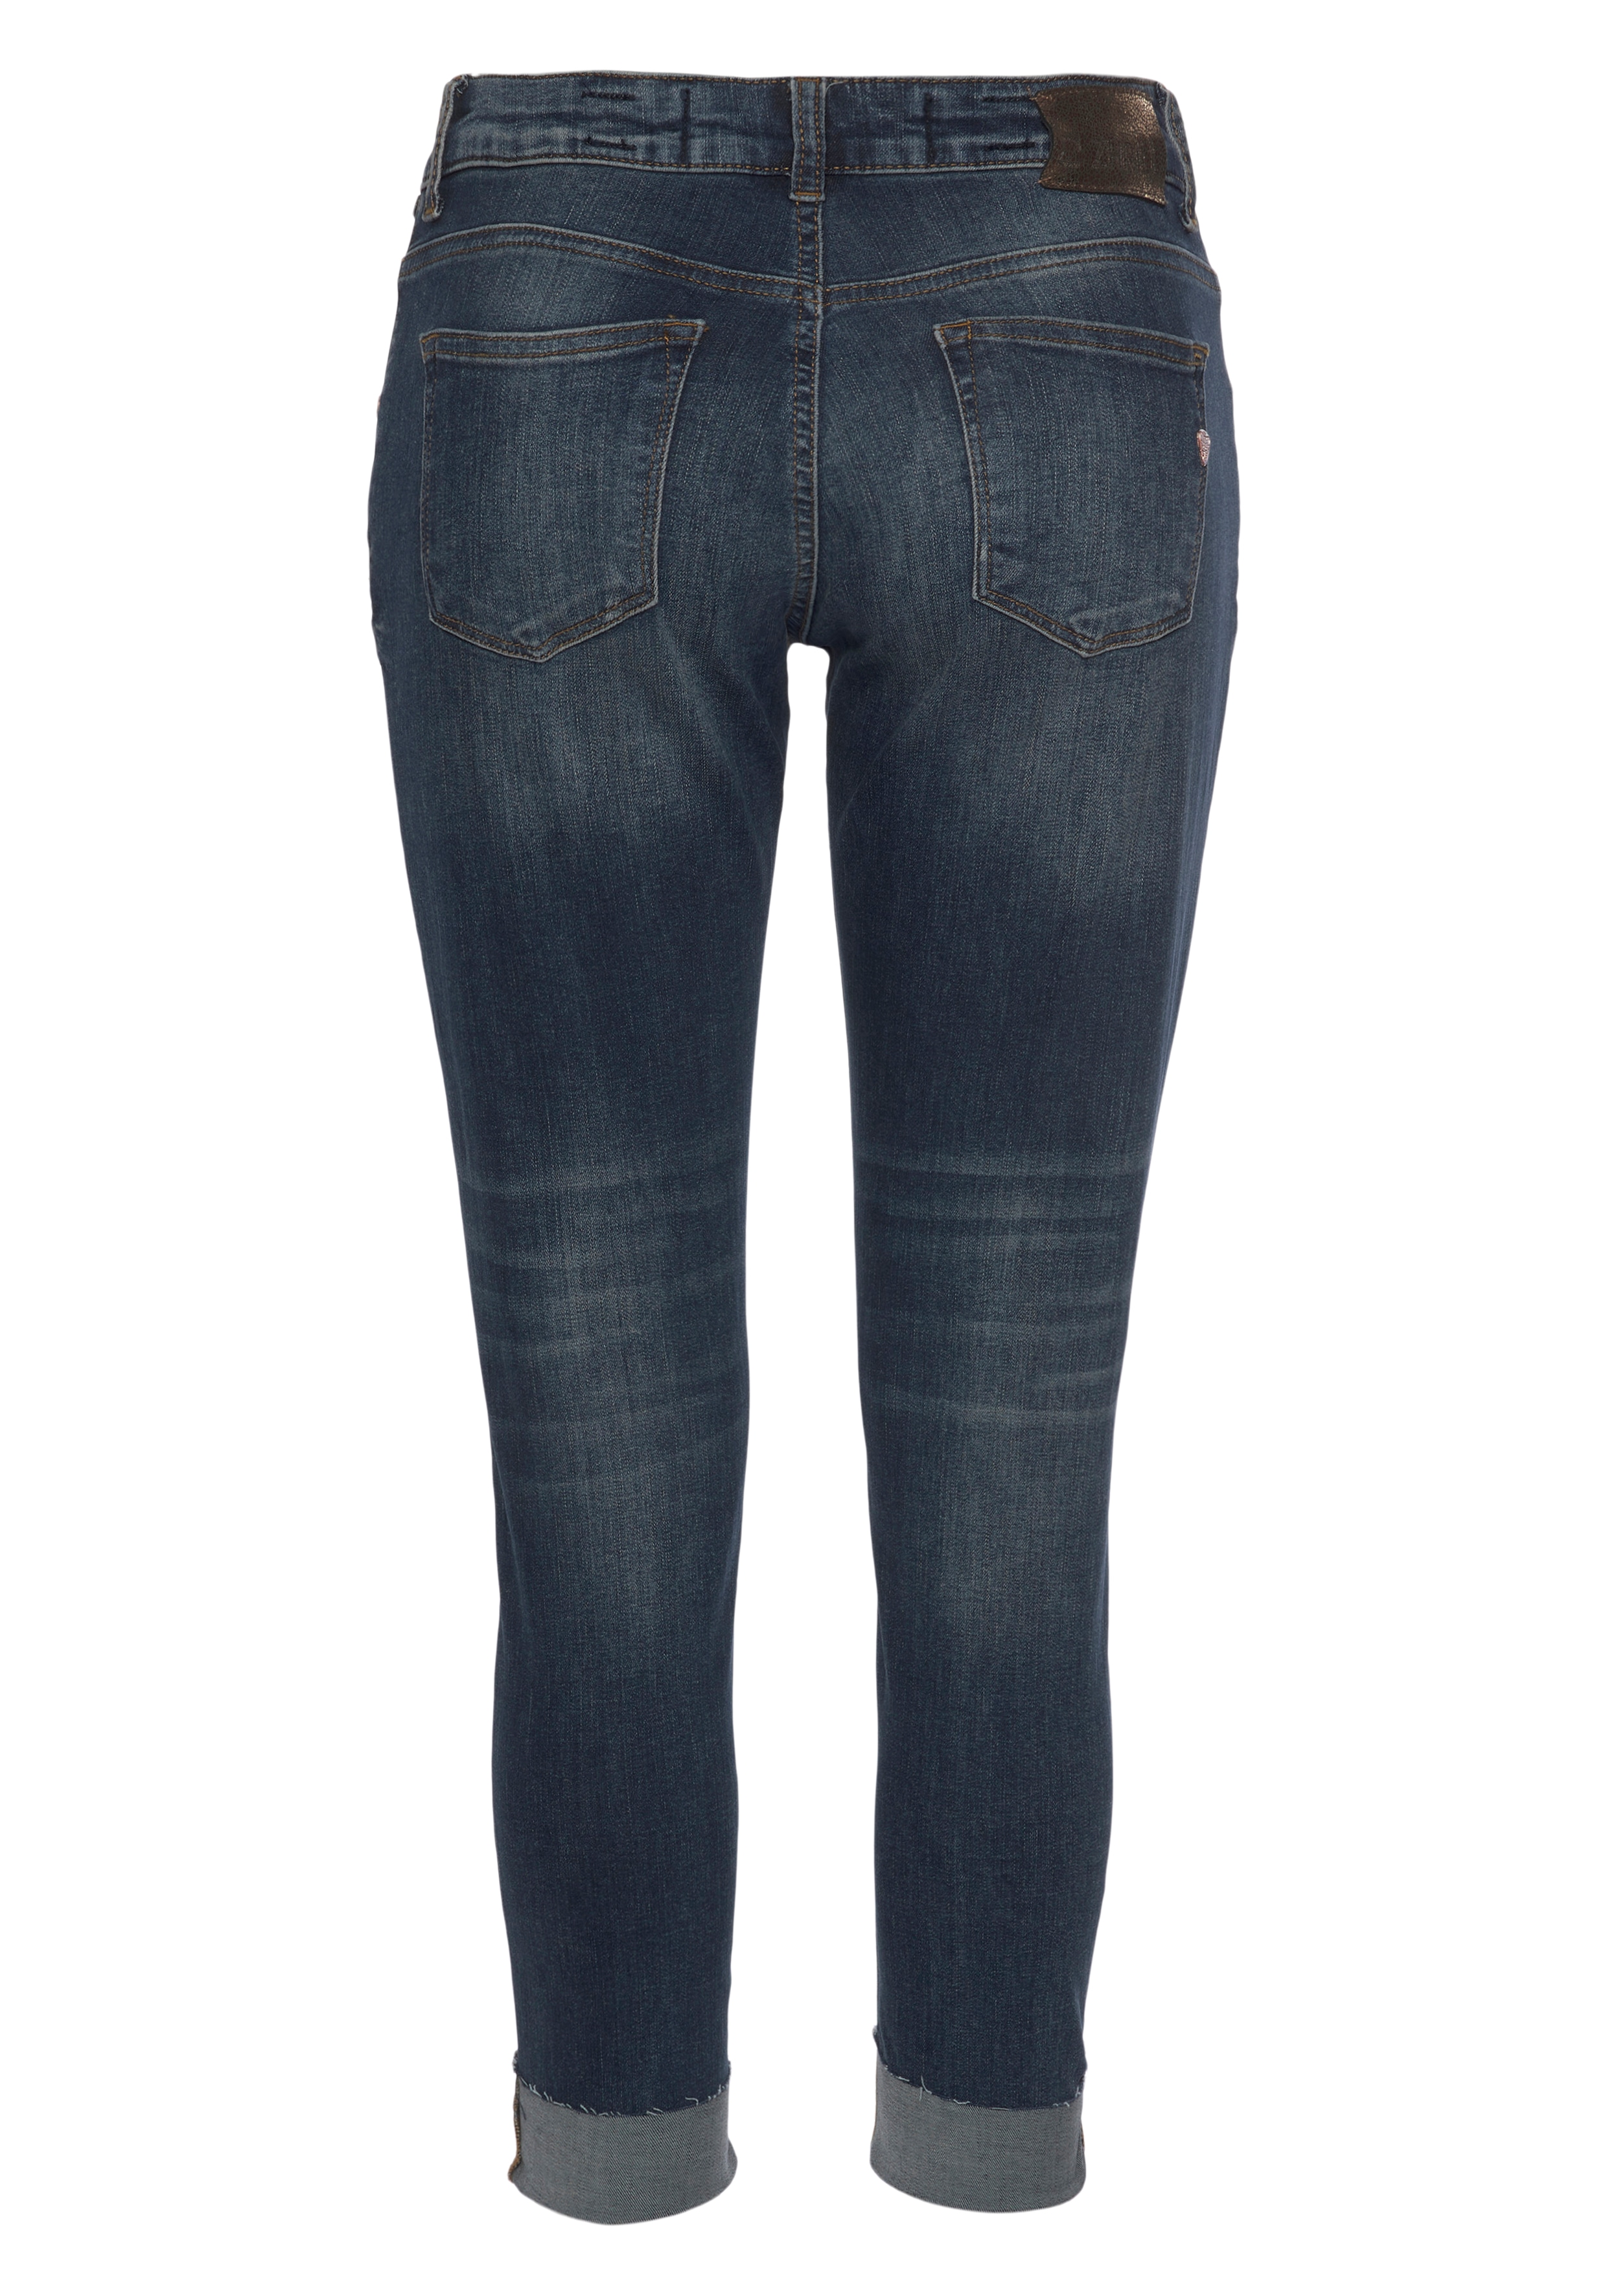 Zhrill Mom-Jeans NOVA BLUE angenehmer Tragekomfort günstig online kaufen